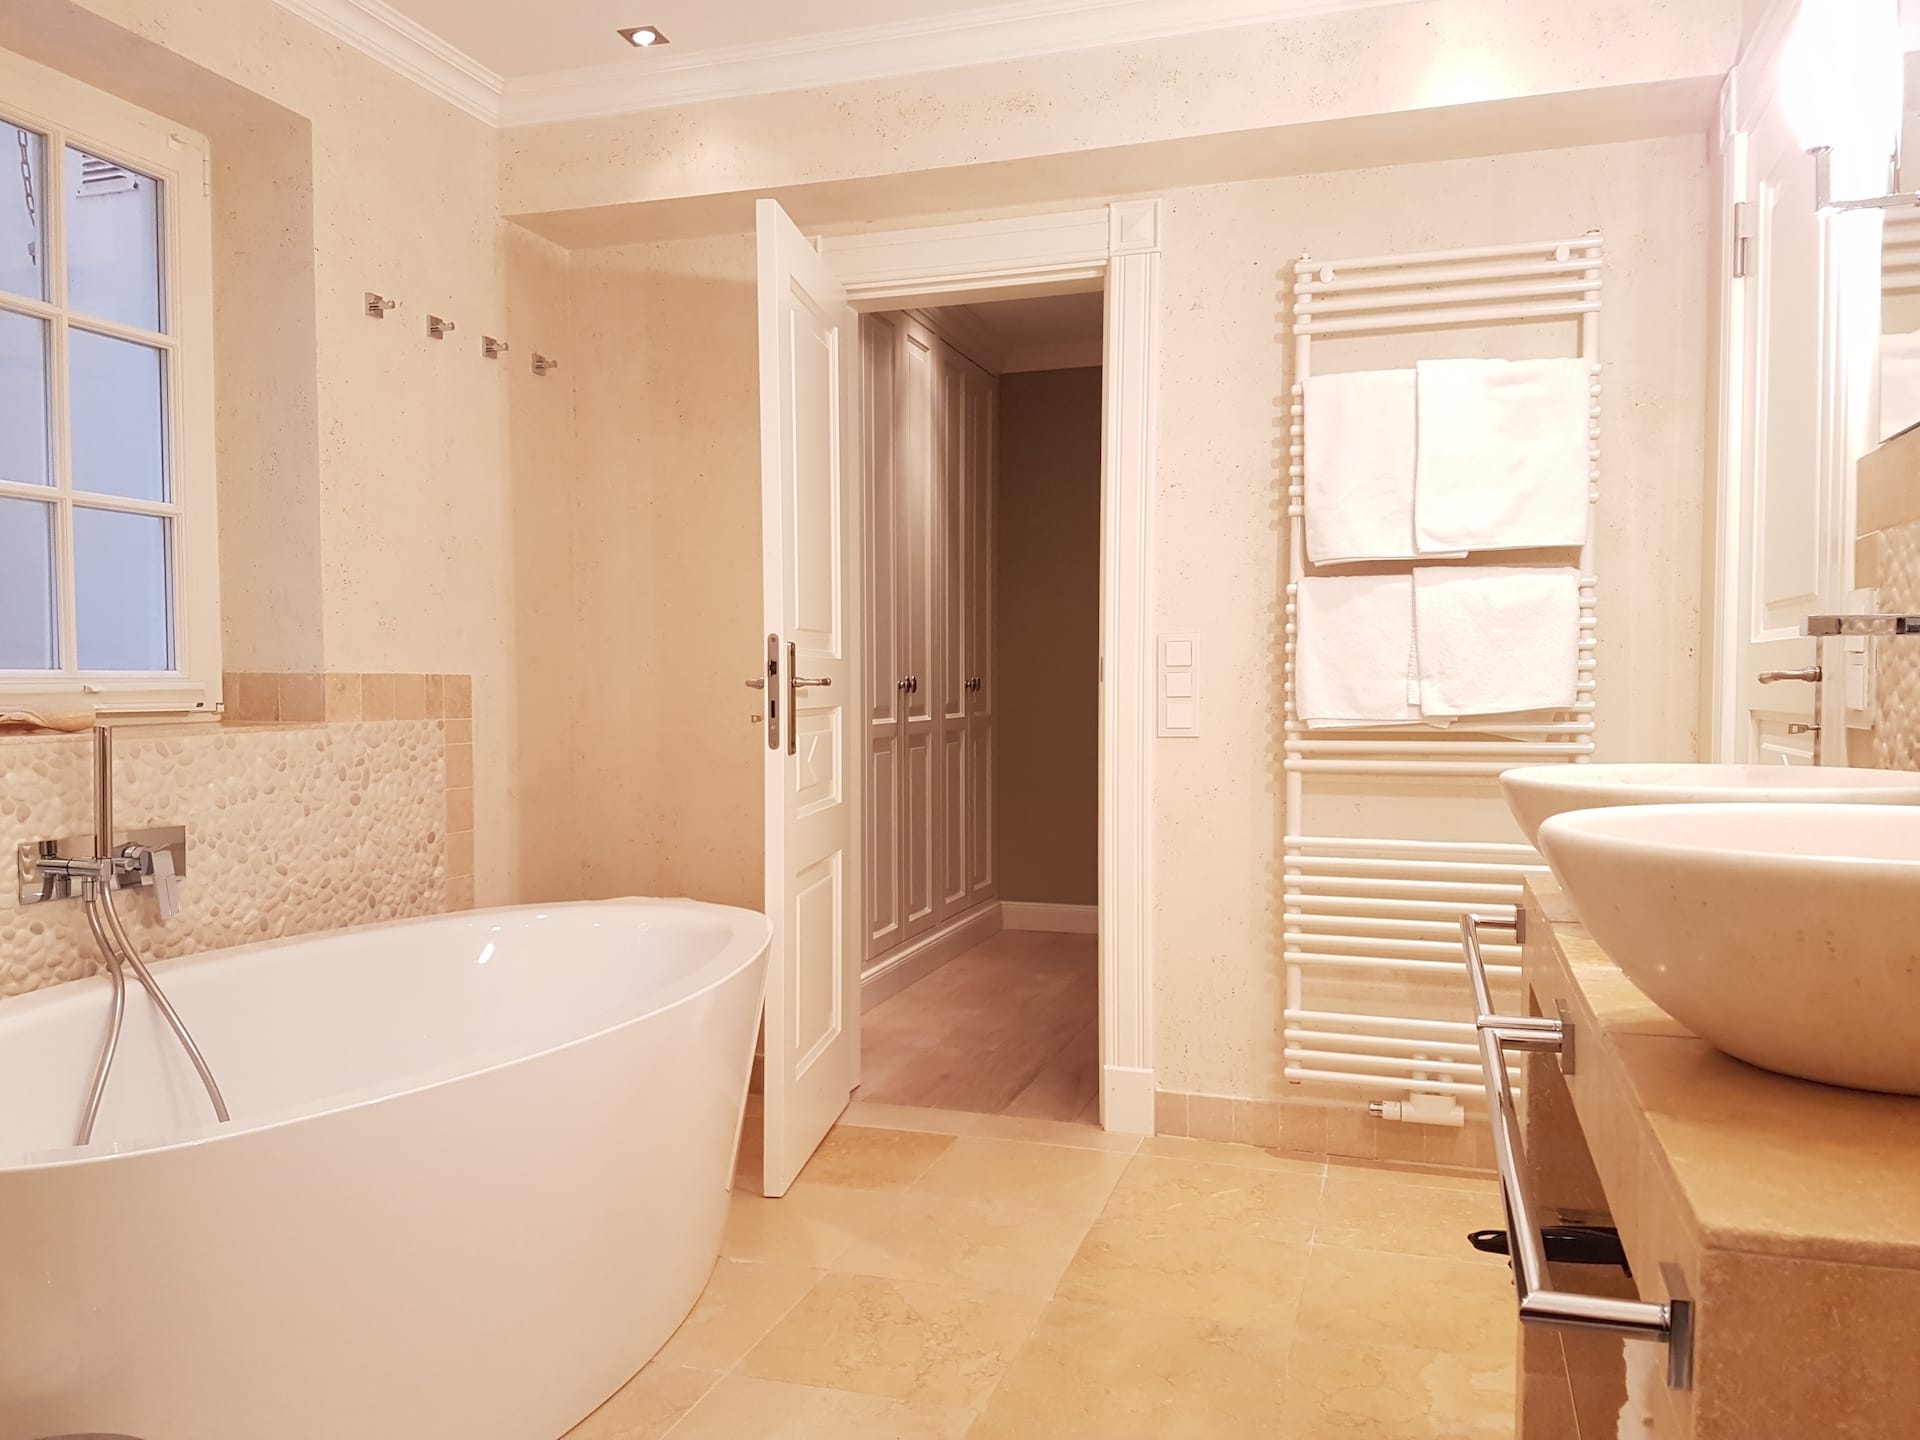 Vollbade mit badewanne und handtuchhalter heizkörper handtuchtrockner in ferienwohnung sonnenhügel 2 im hotel duen in rantum auf sylt